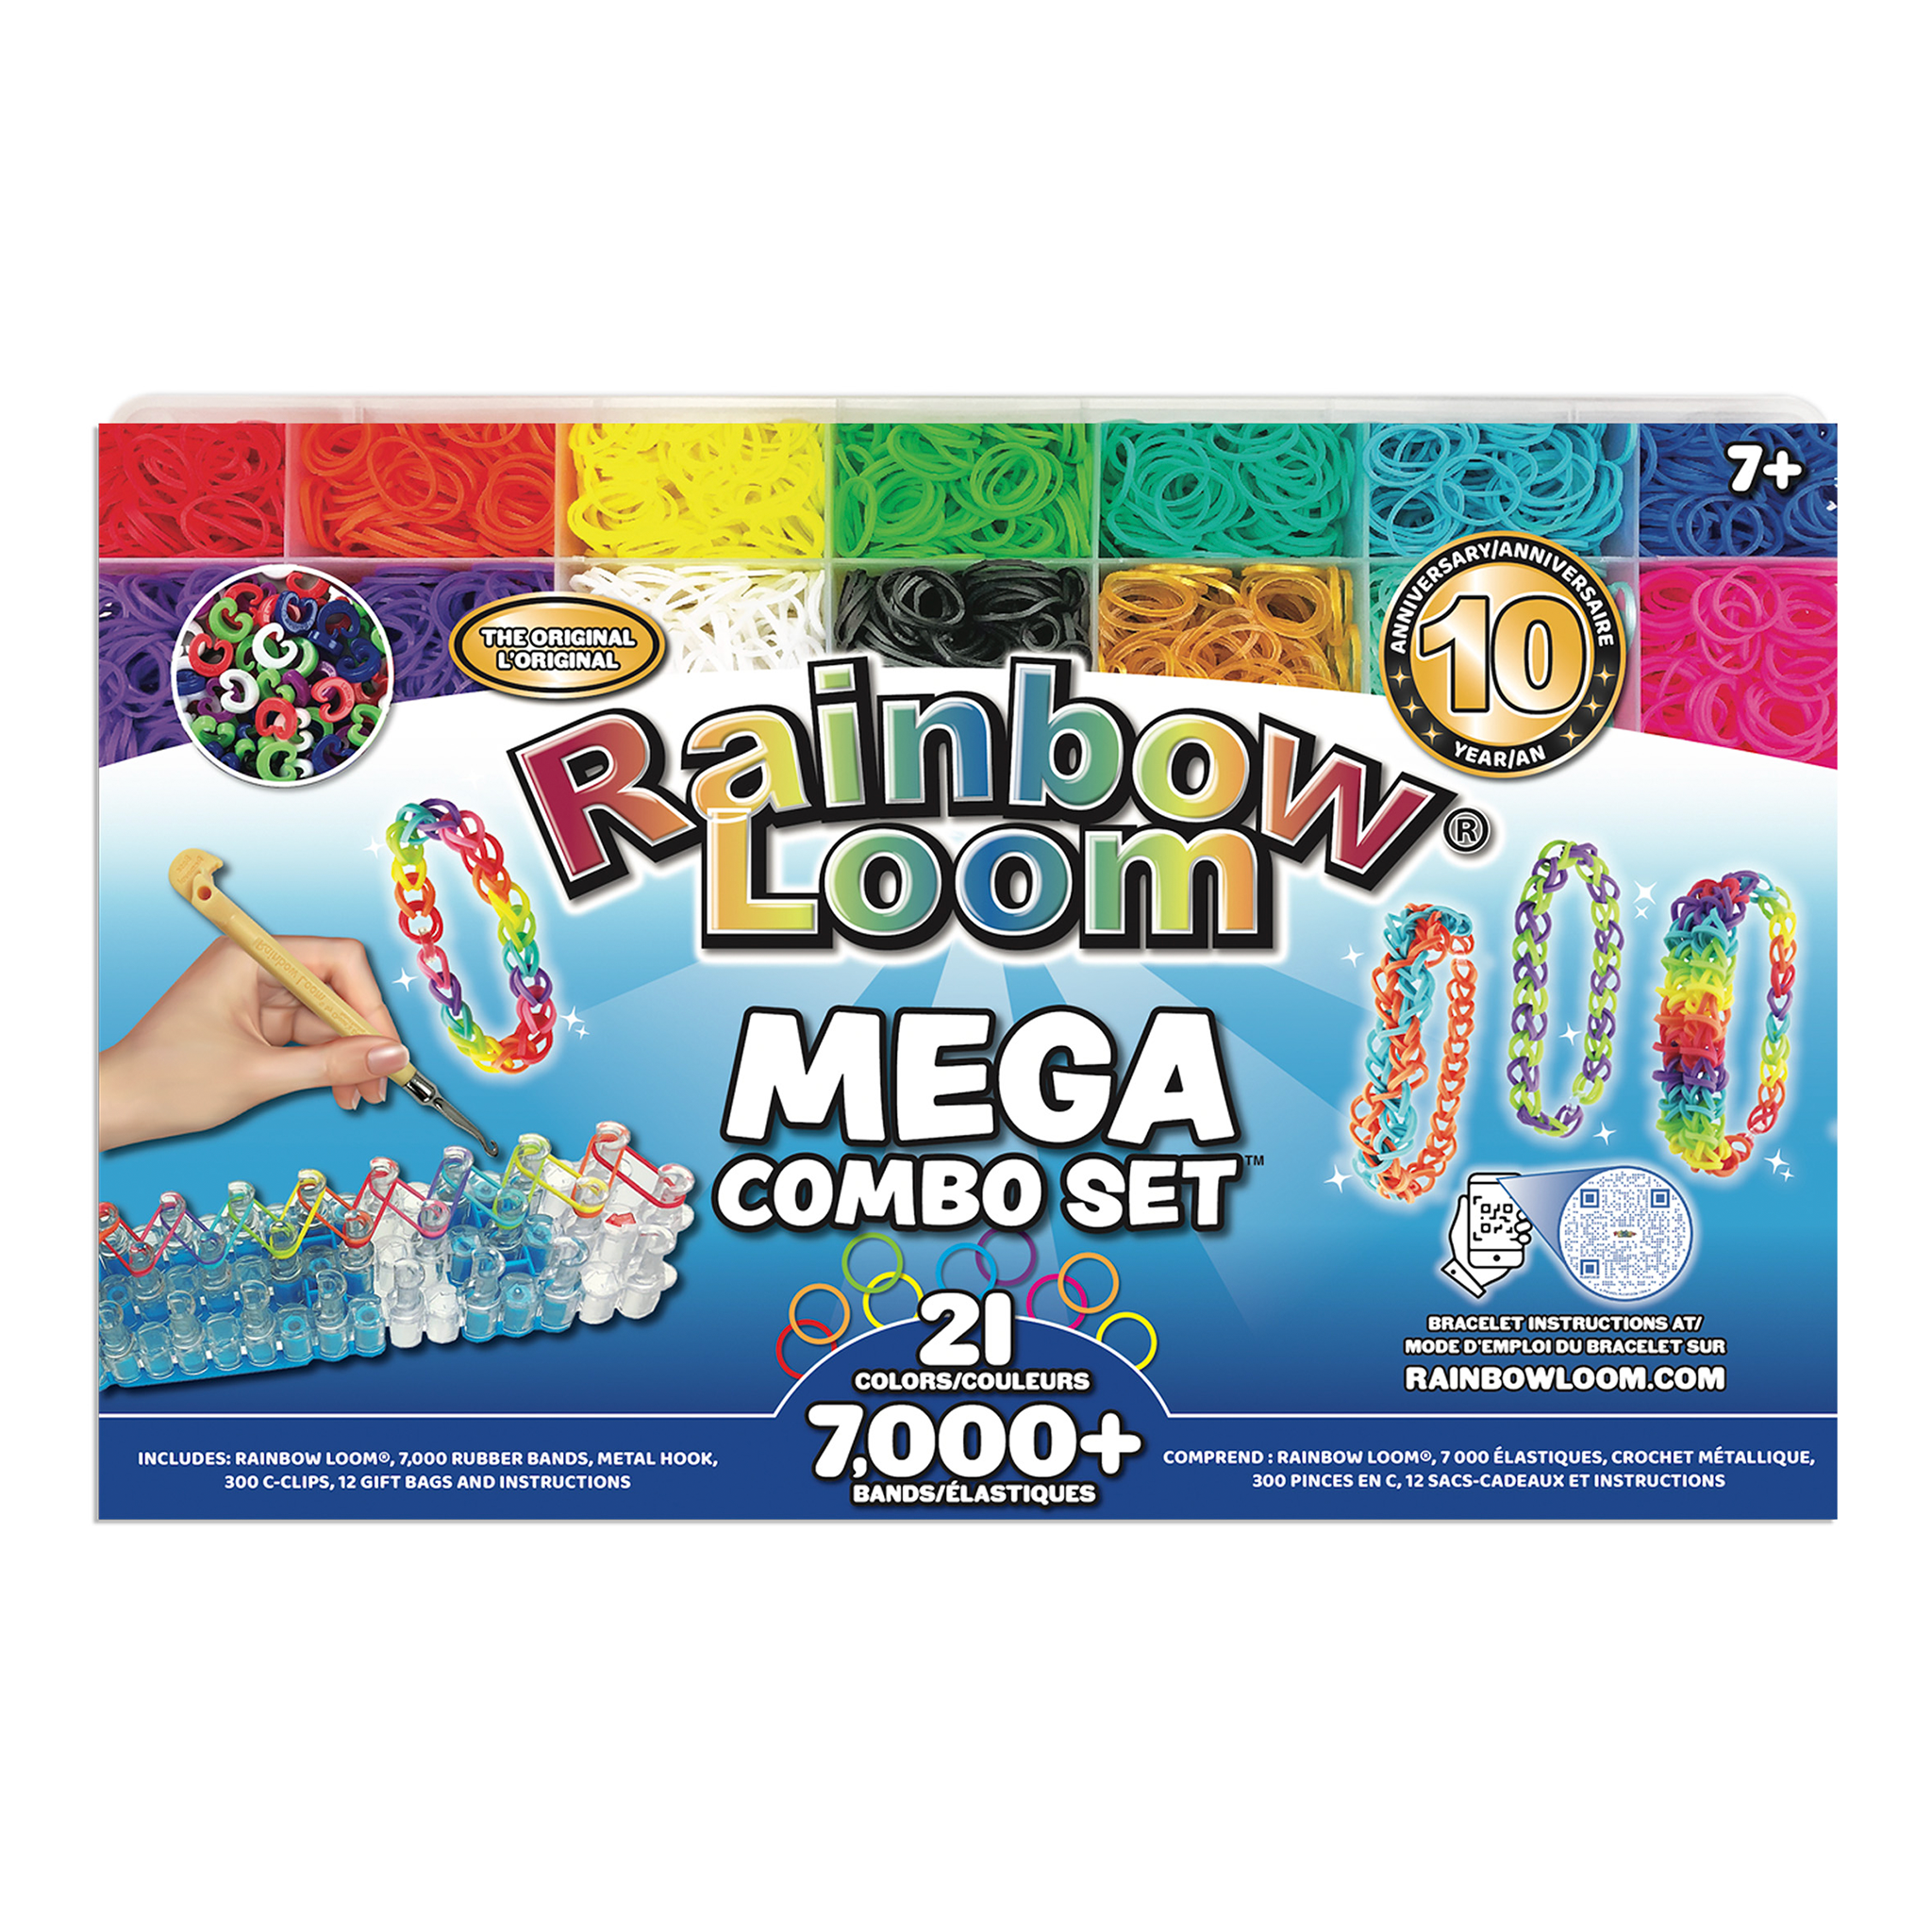 Rainbow Loom Official Website – Rainbow Loom USA Webstore